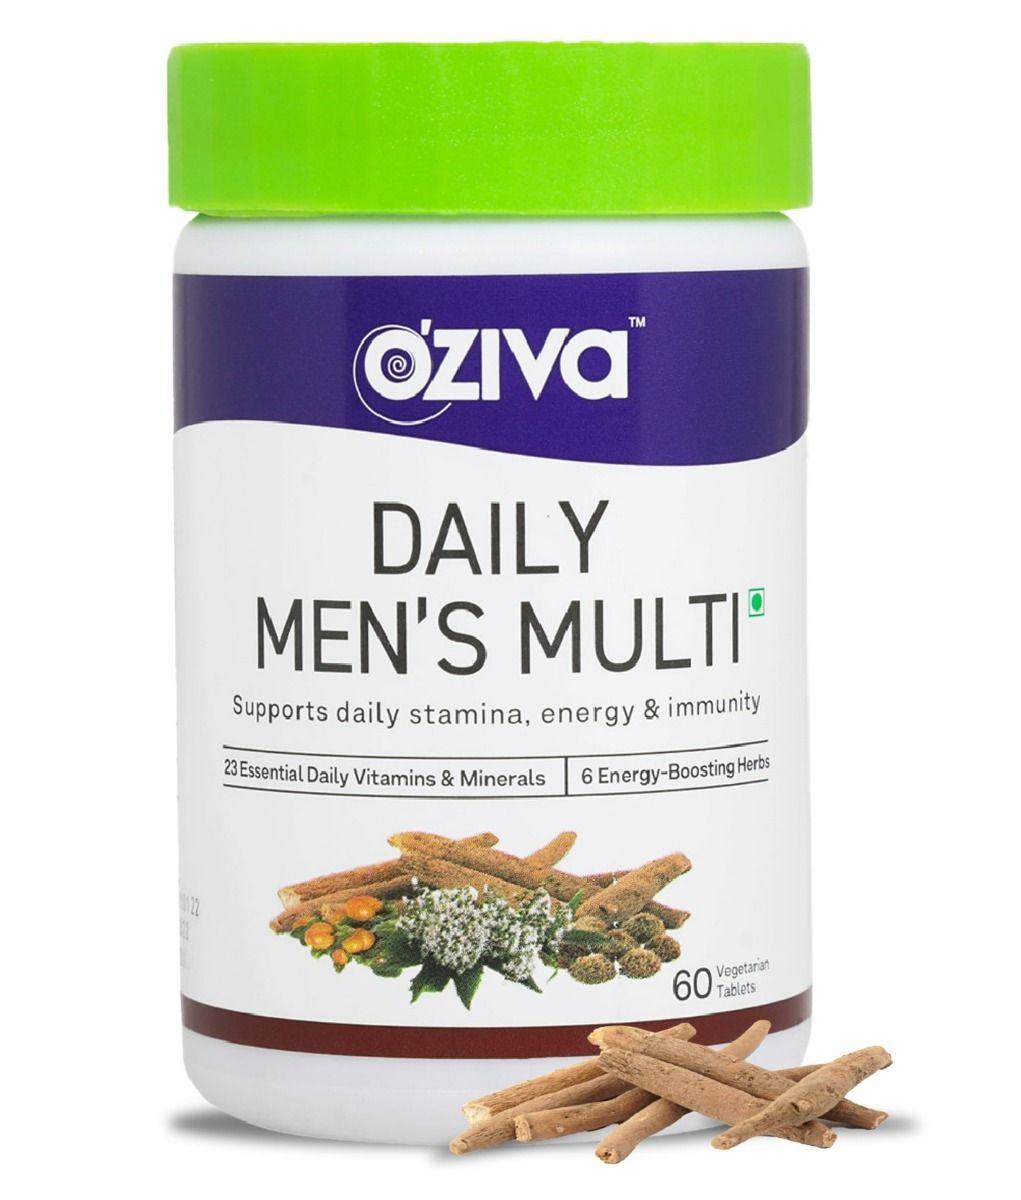 OZiva Daily Men's Multi, 60 Tablets, Pack of 1 